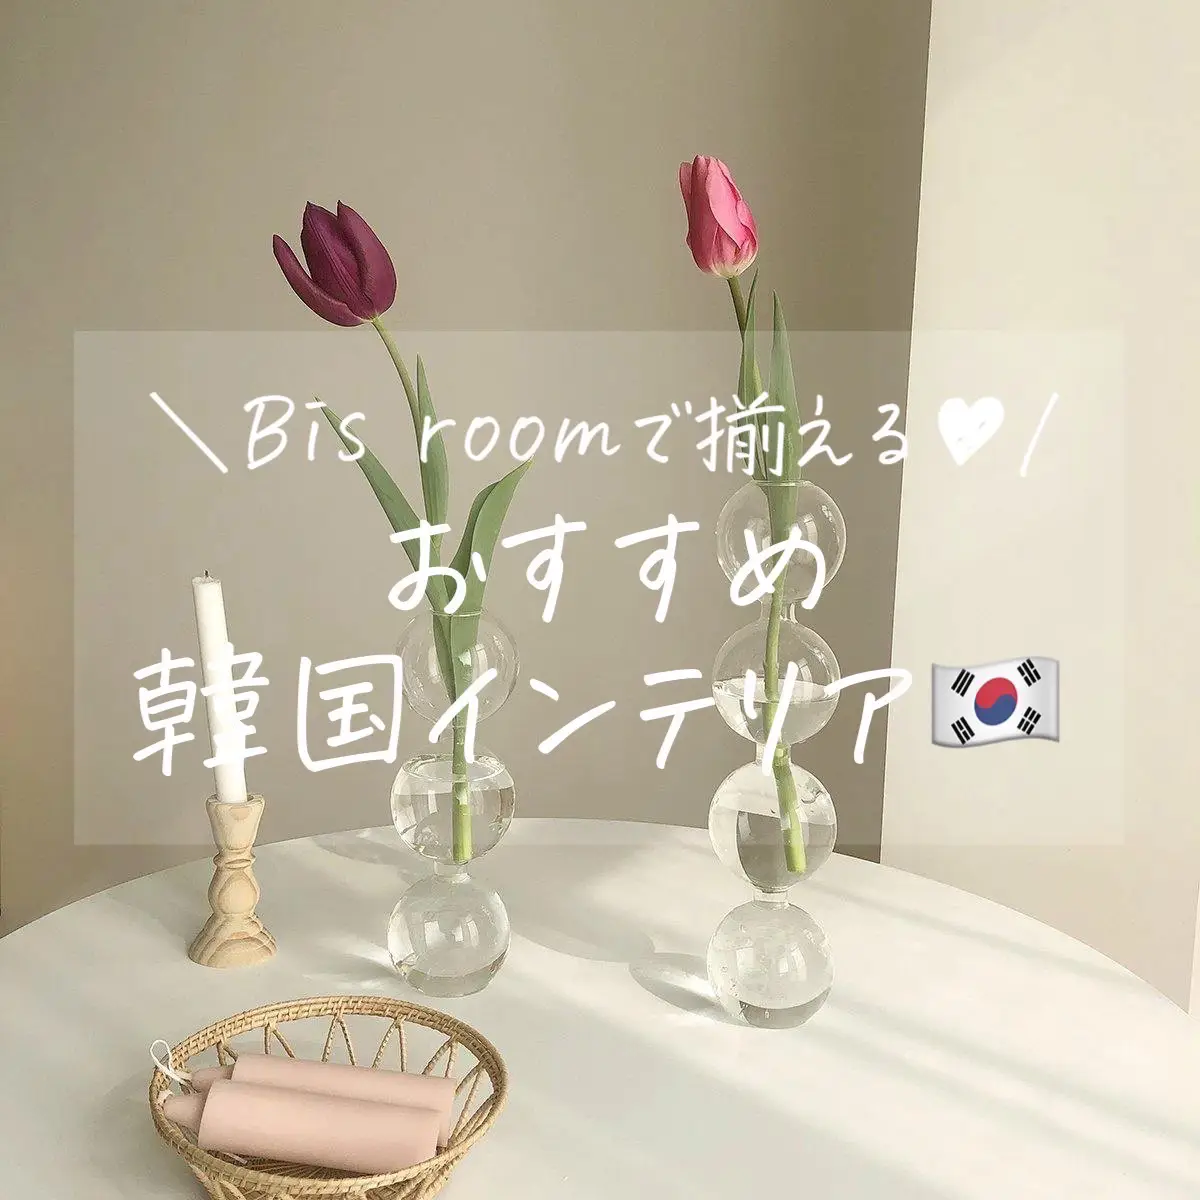 Bis roomでおすすめの韓国インテリア🇰🇷の画像 (1枚目)